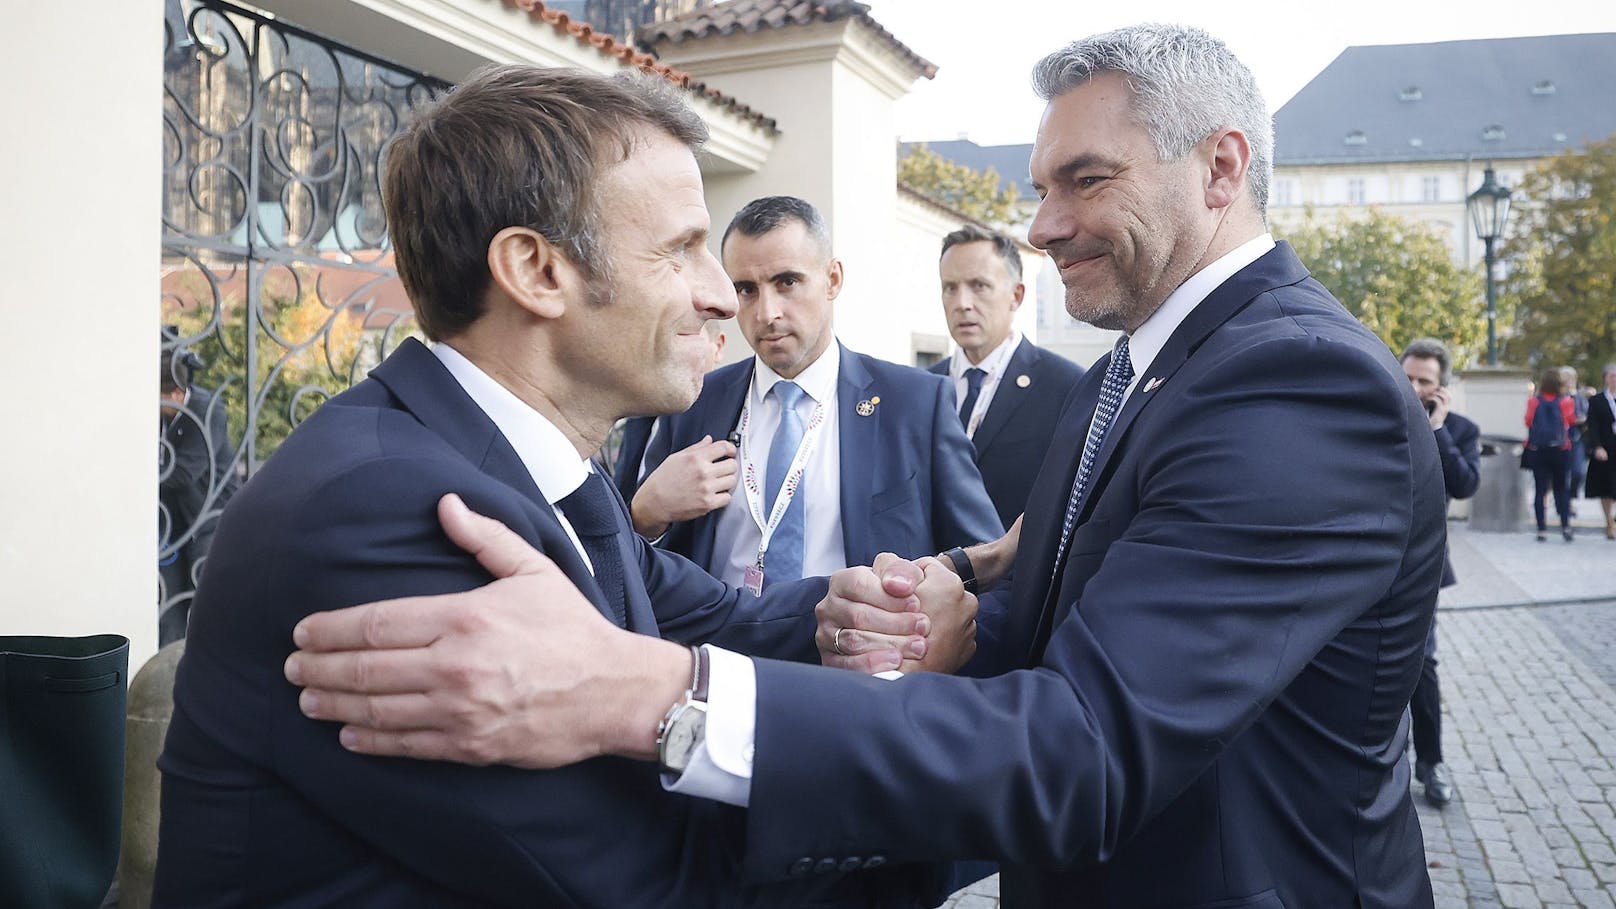 Nehammer bei Macron: Handshake könnte heftig werden